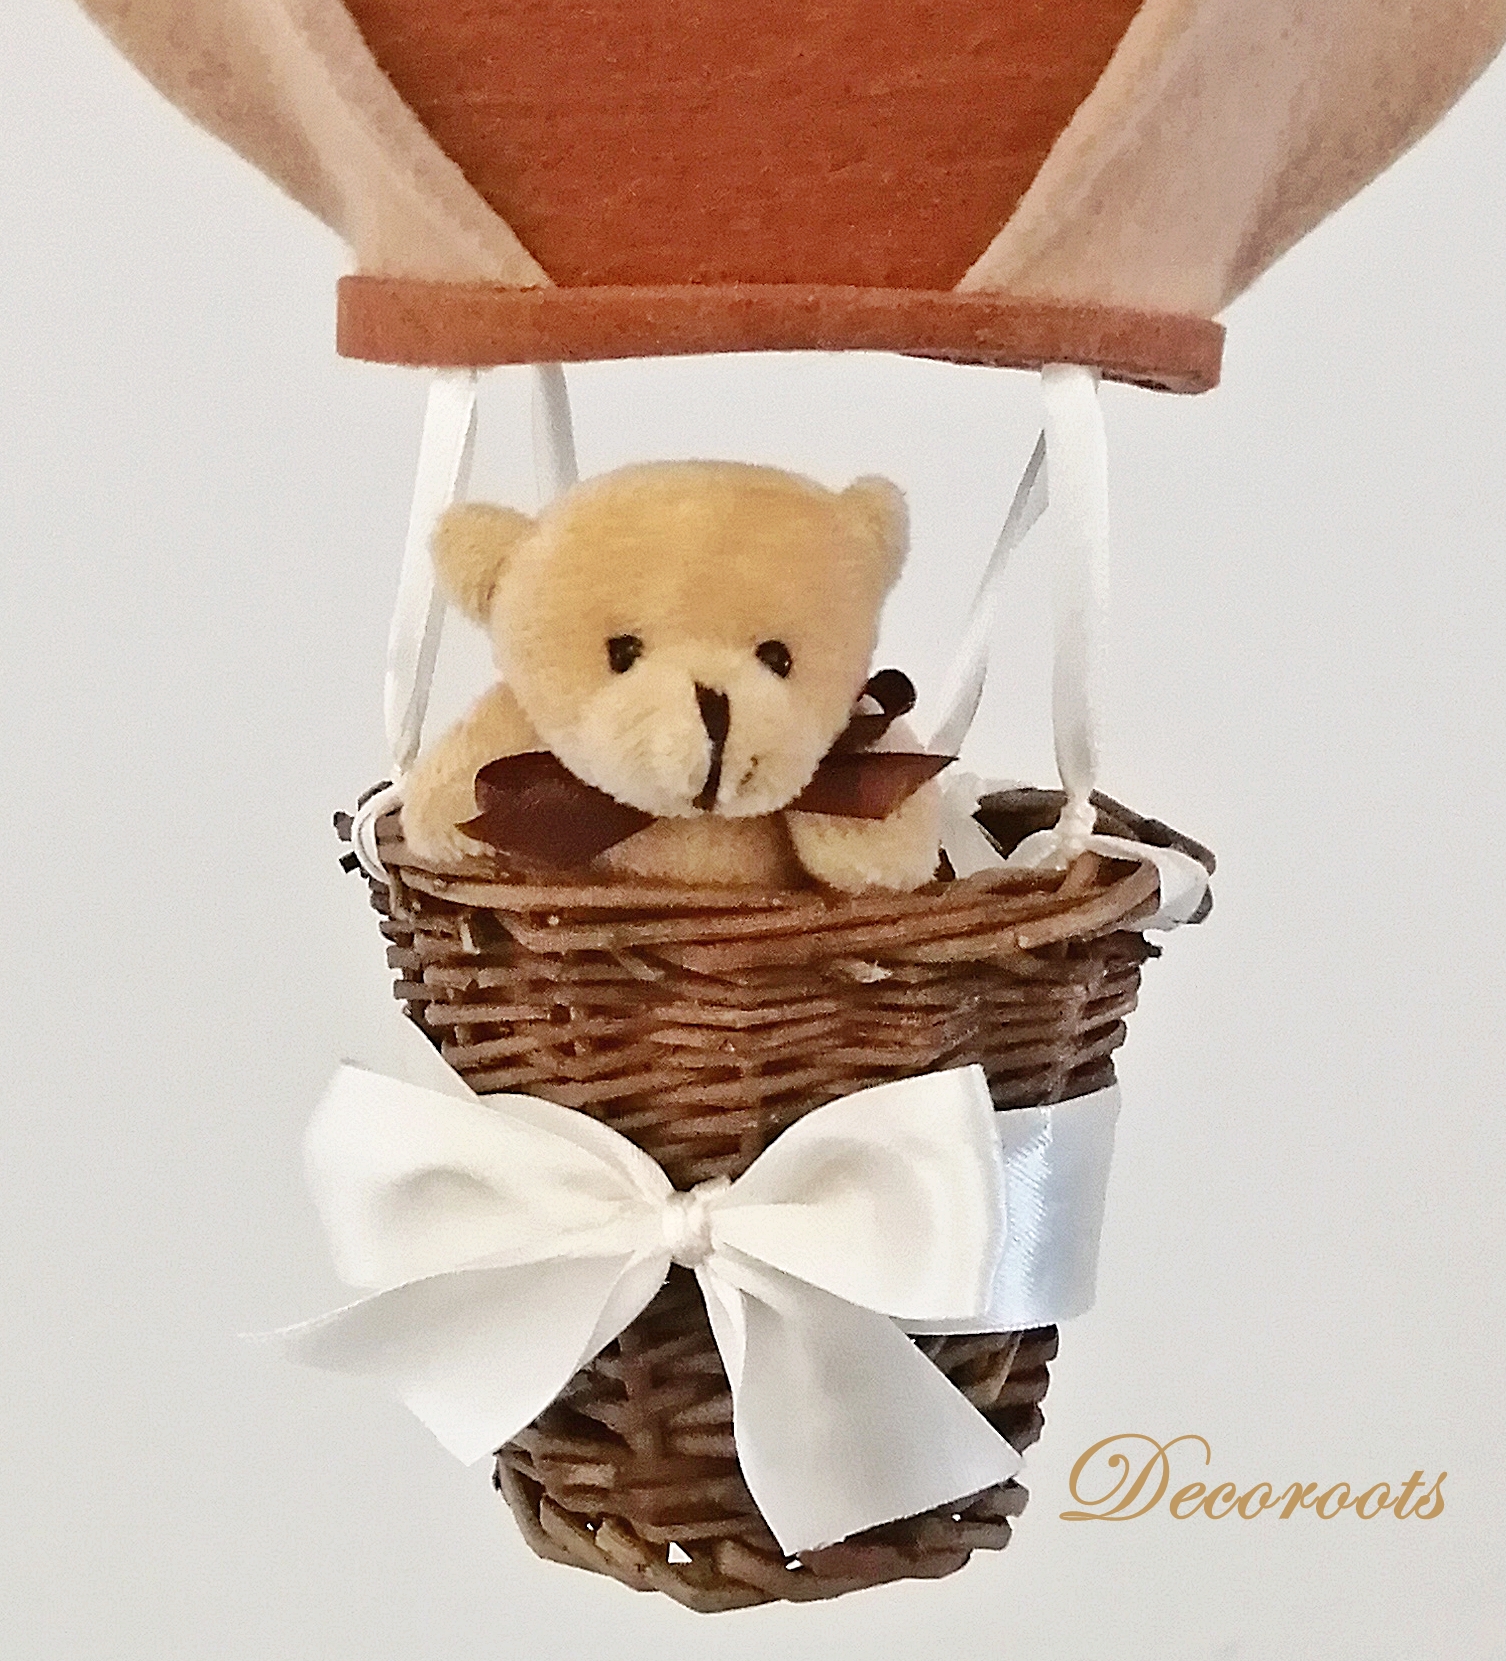 montgolfiere-decorative-enfant-bebe-suspension-mobile-marron-chocolat-beige-mixte-noisette-chambre